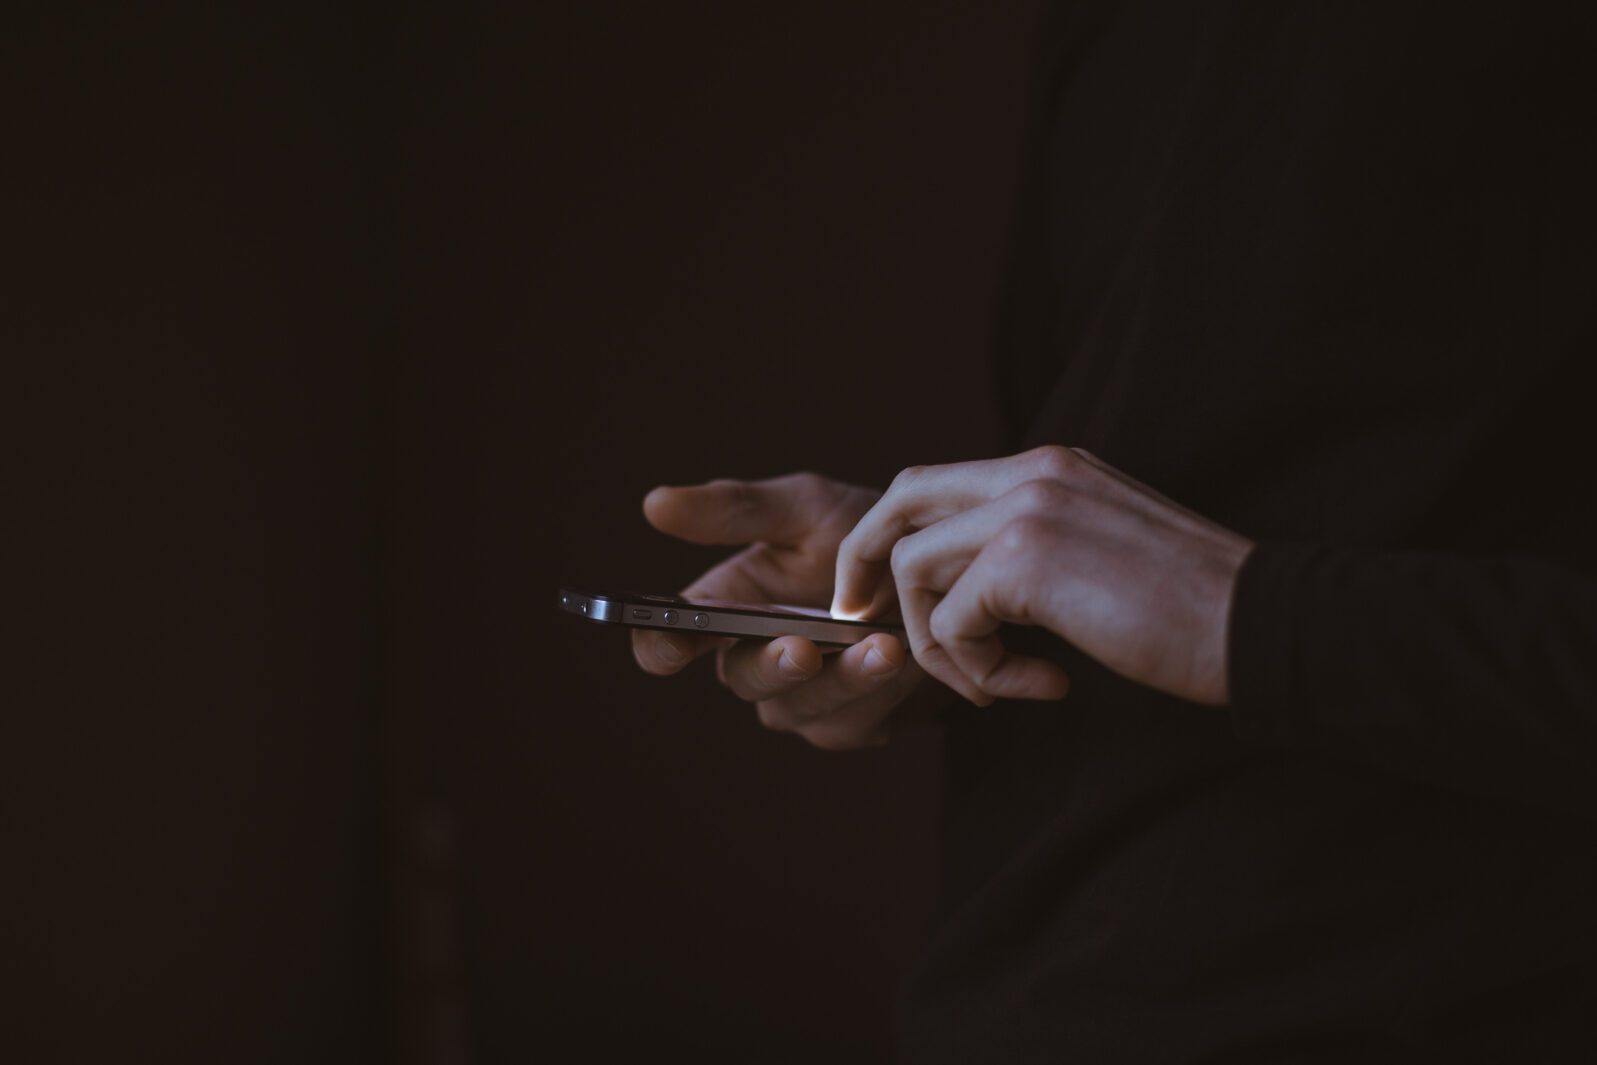 Hands in dark using smartphone